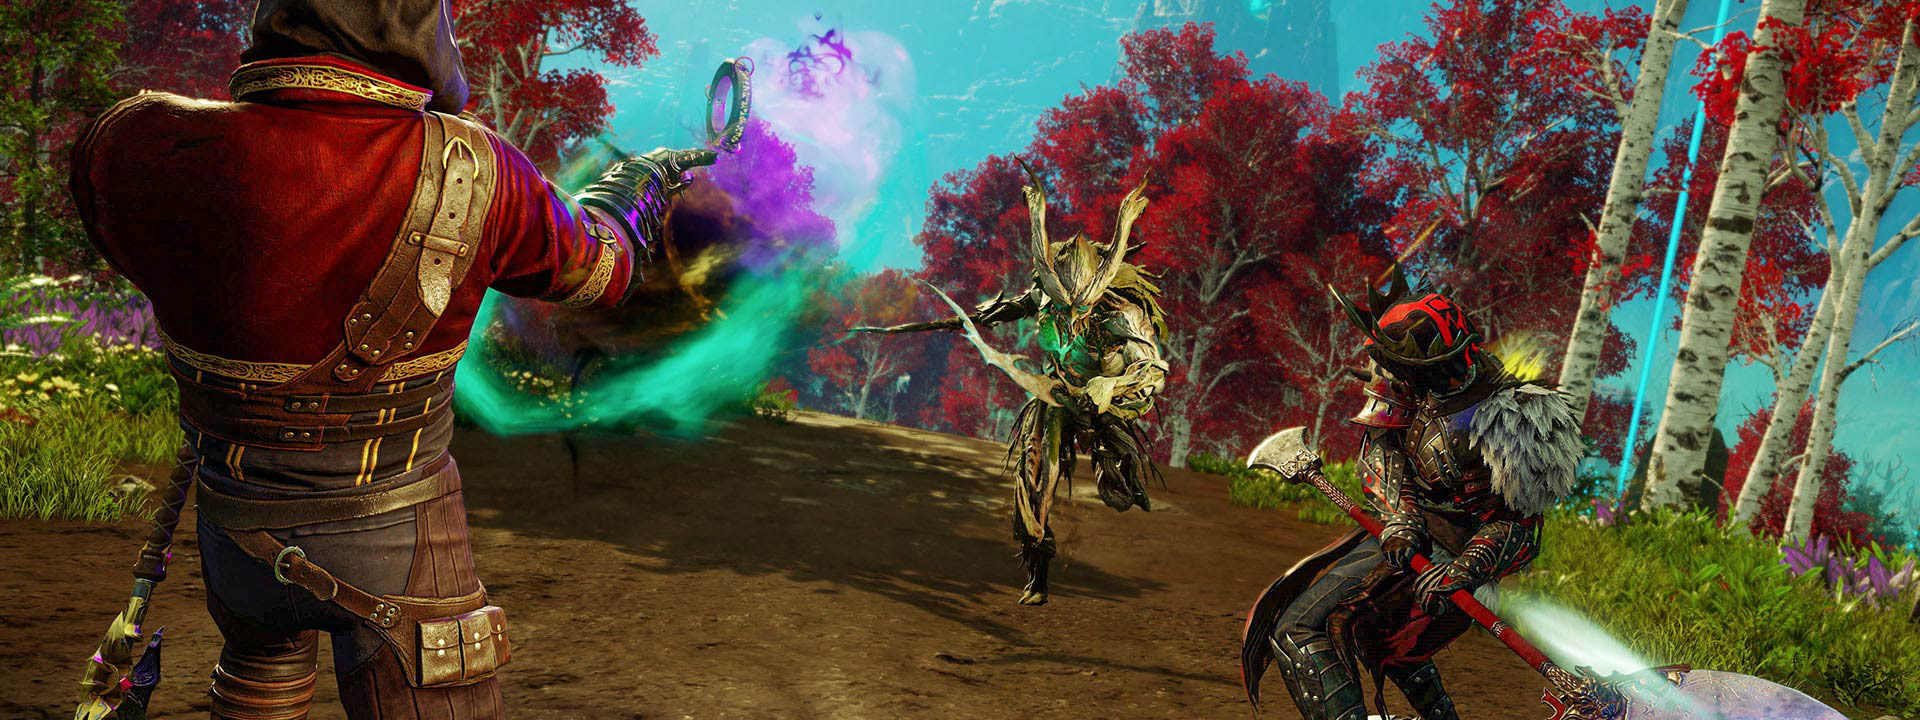 Trzy walczące postaci: ta z lewej strzela zielono-fioletową mgłą do postaci w środku, która biegnie w jej stronę z wyciągniętym mieczem; trzecia postać stoi w gotowości